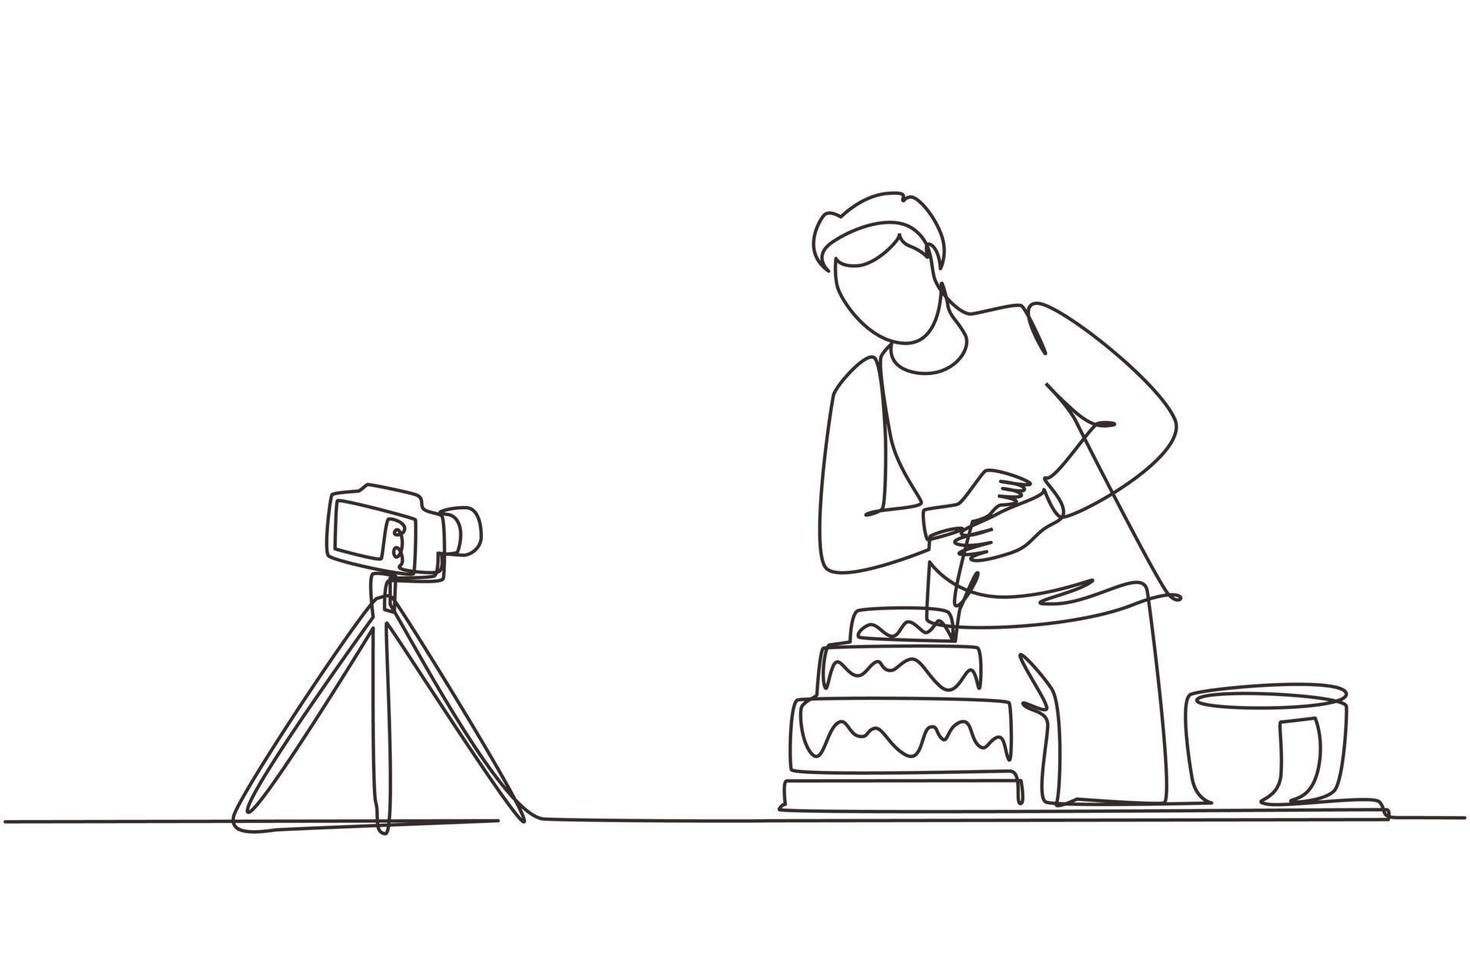 einzelne durchgehende Strichzeichnung Influencer oder Food-Blogger, die Inhalte erstellen. Mann dreht Kochvideo mit Kamera auf Stativ. koch backt und dekoriert kuchen in der küche. Designvektor mit einer Linie zeichnen vektor